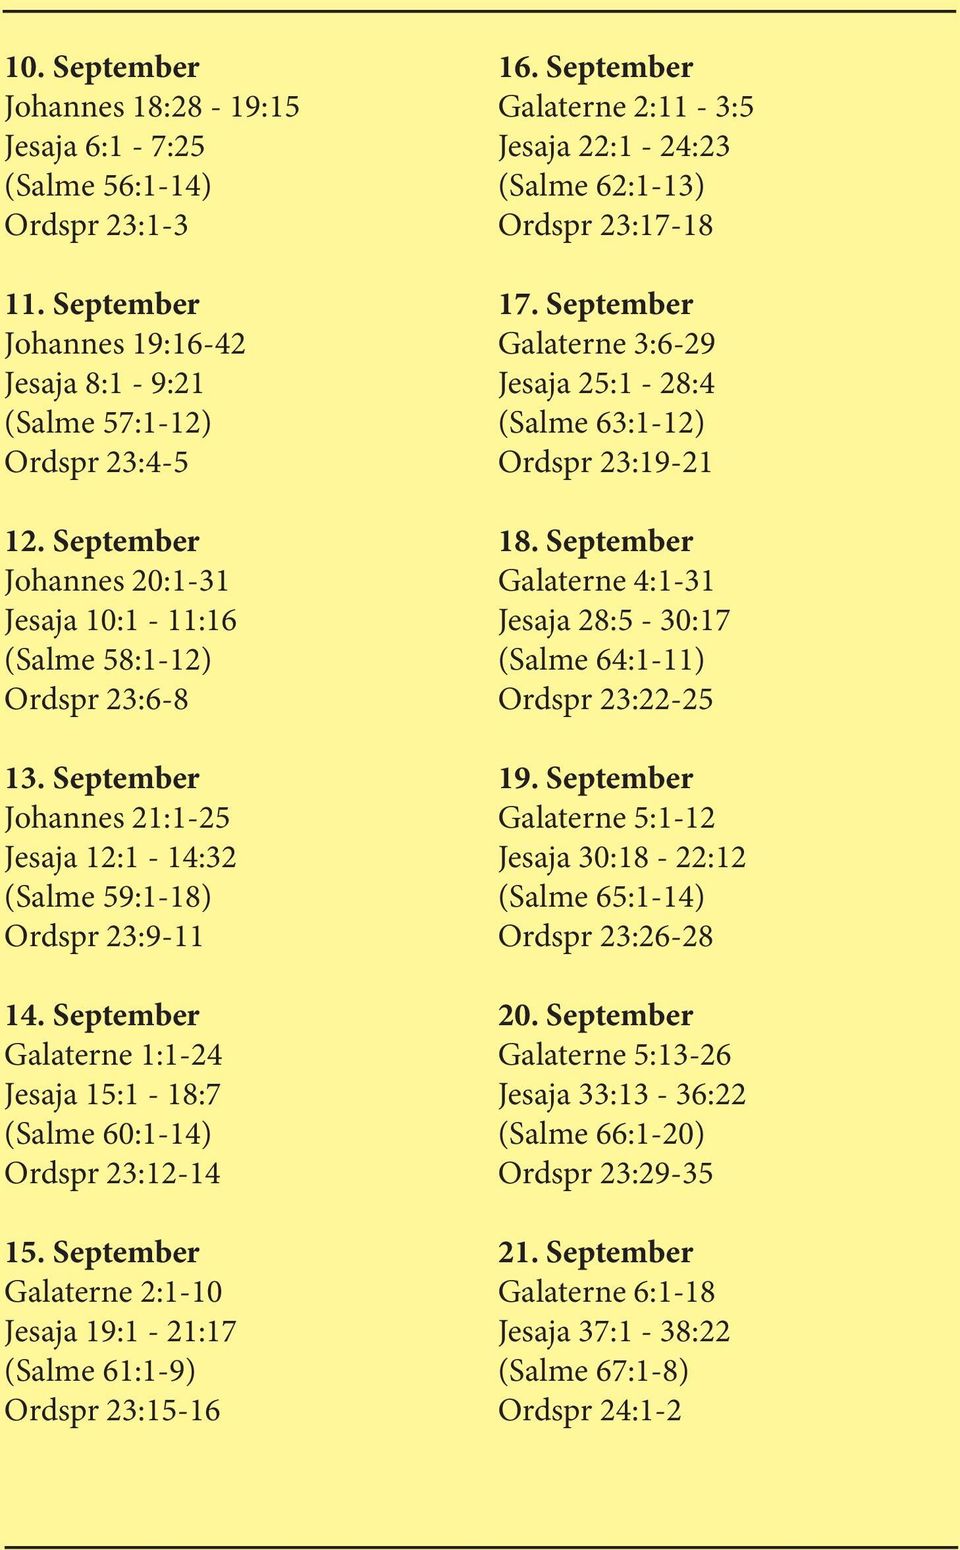 September Galaterne 1:1-24 Jesaja 15:1-18:7 (Salme 60:1-14) Ordspr 23:12-14 15. September Galaterne 2:1-10 Jesaja 19:1-21:17 (Salme 61:1-9) Ordspr 23:15-16 16.